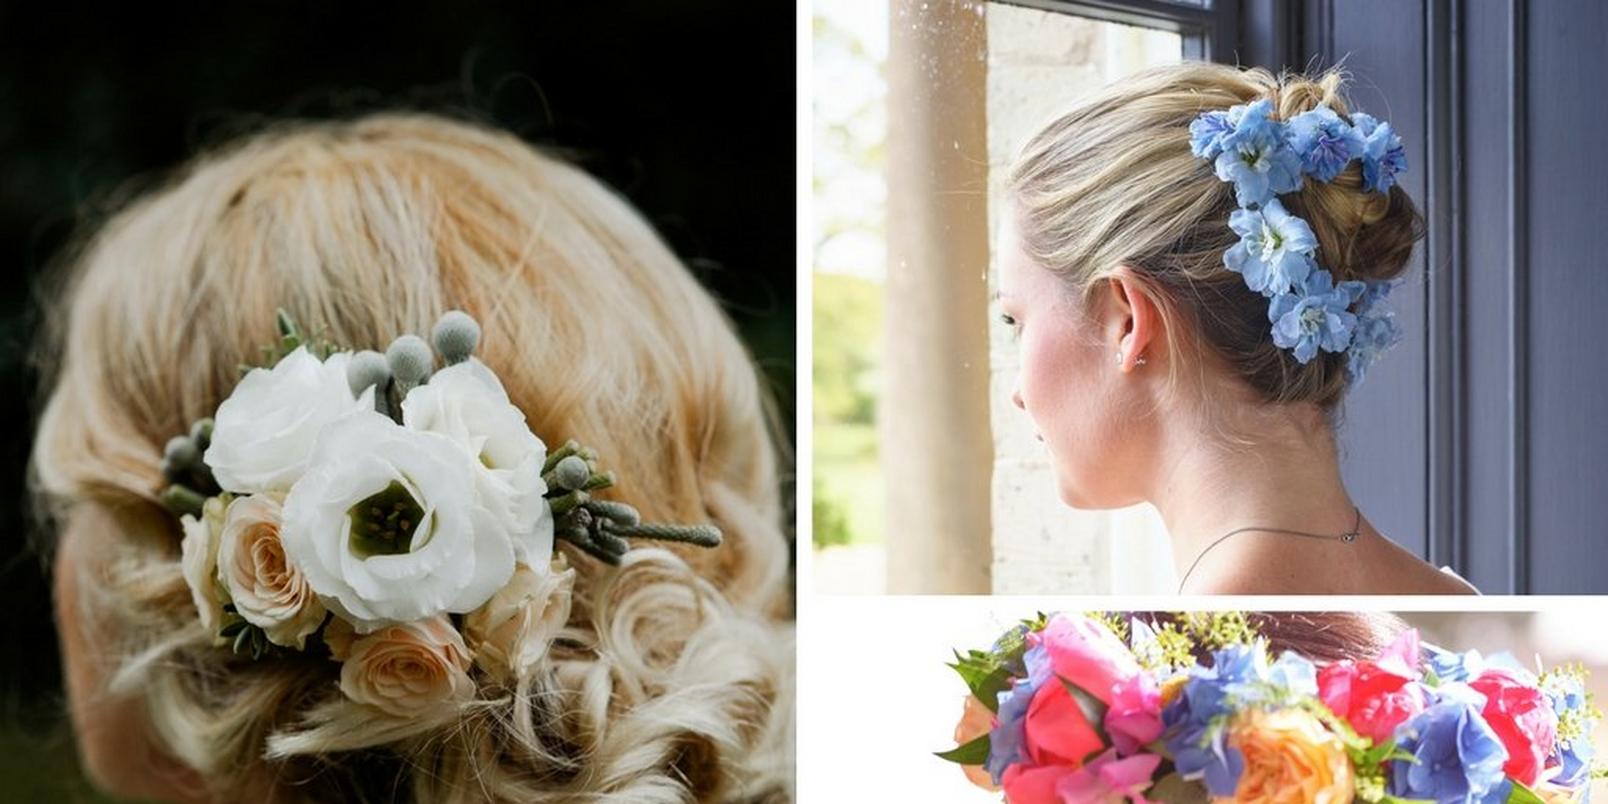 Wedding-flowers-in-hair